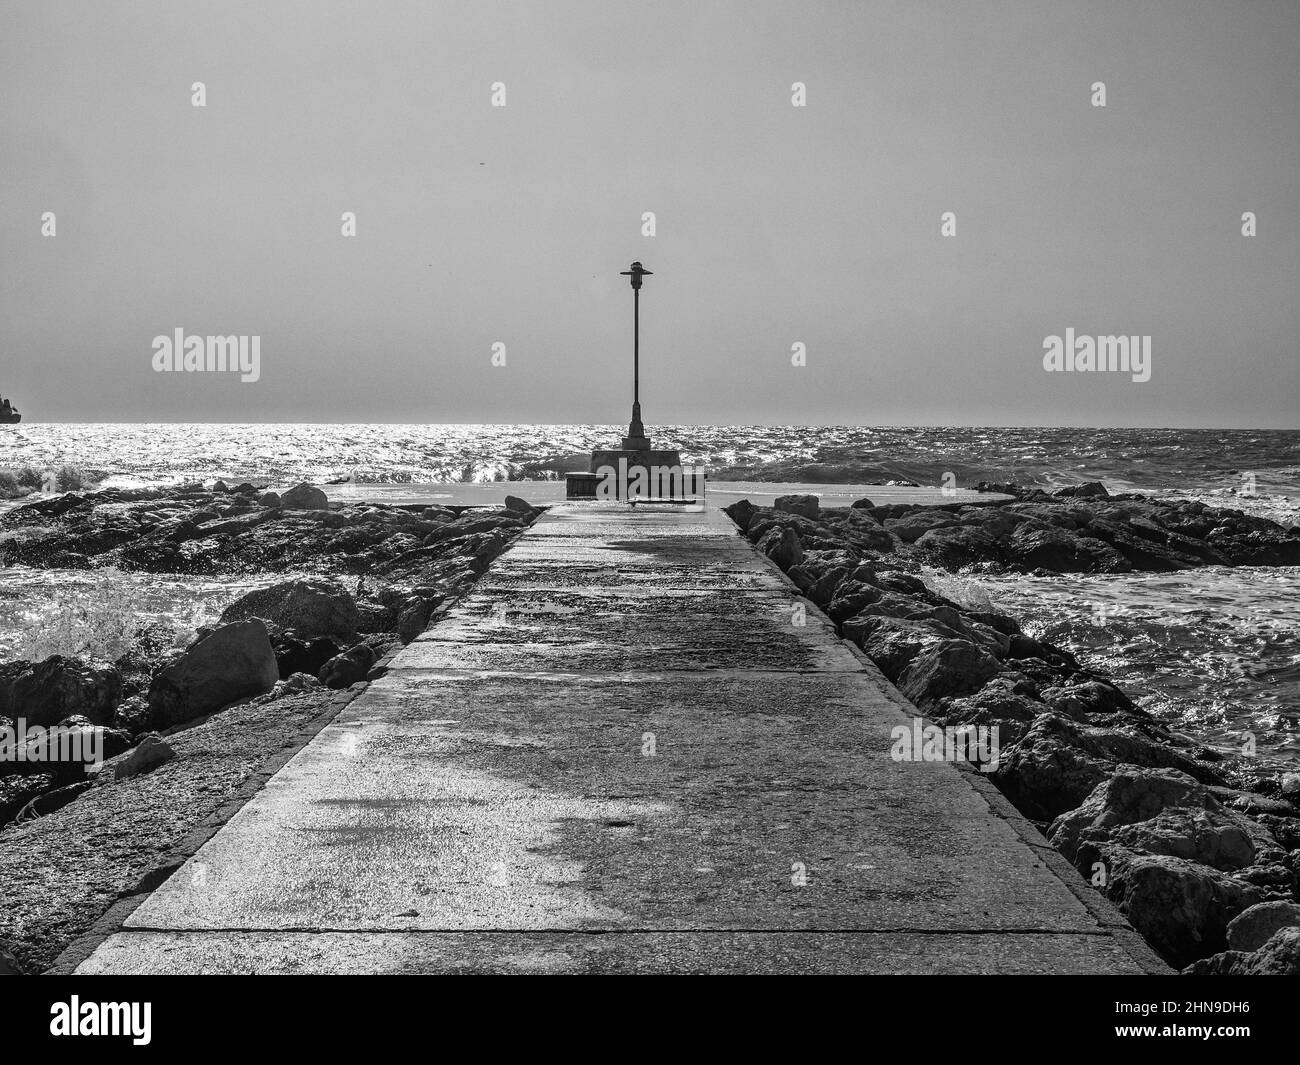 Lampo sulla punta di un frangiflutti che si affaccia sul mare Foto Stock